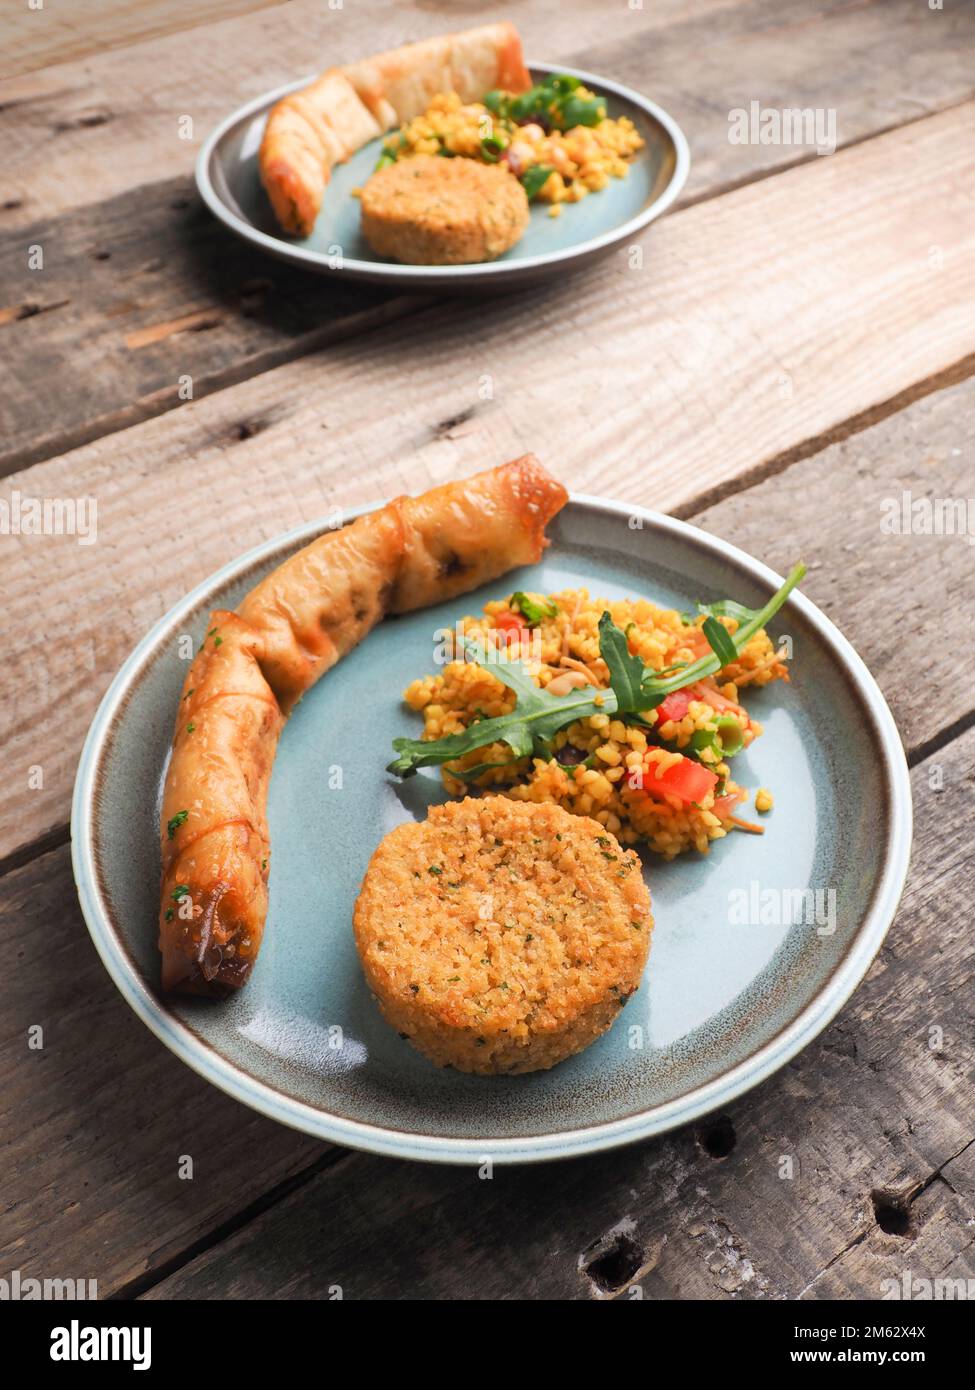 Leckere Falafel mit würzigem Bulgur und einer vegetarischen Teigrolle auf einer Keramikplatte, traditionelle hitzebehandelte Speisen Stockfoto